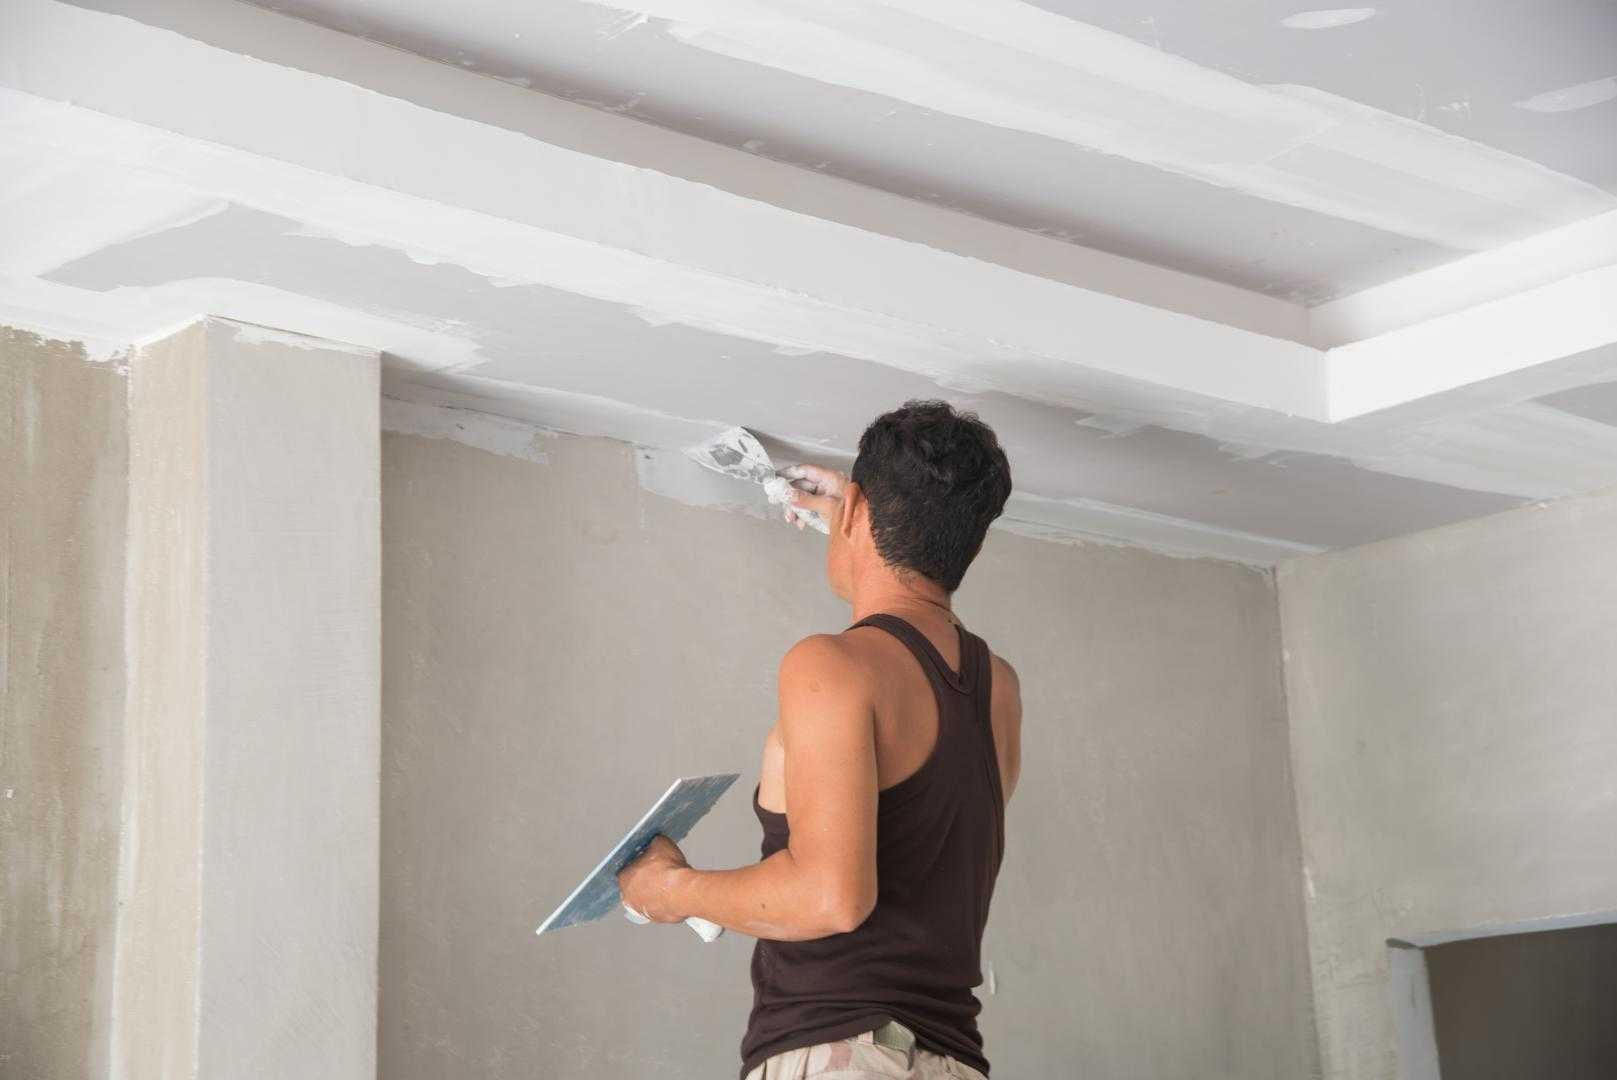 Подготовка поверхности потолка своими руками под покраску, побелку, установку натяжного покрытия и иное, обесточивание электропроводки на стене и другие действия